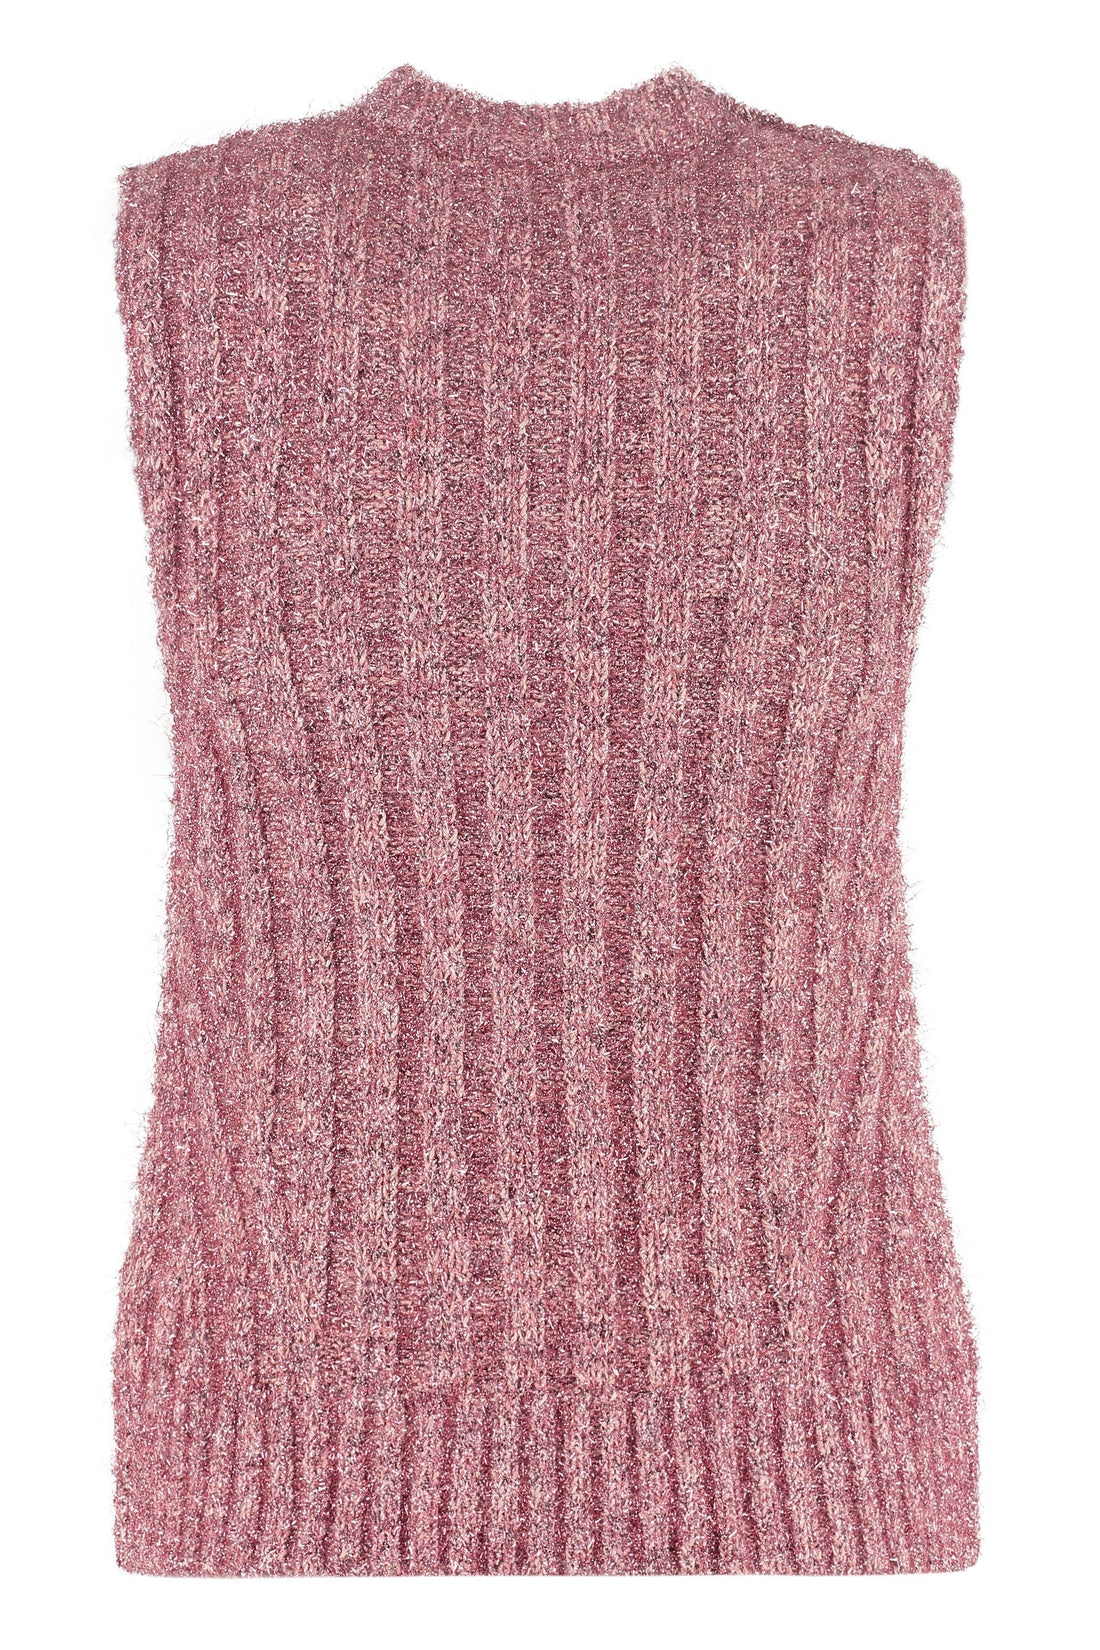 GANNI-OUTLET-SALE-Knitted vest-ARCHIVIST